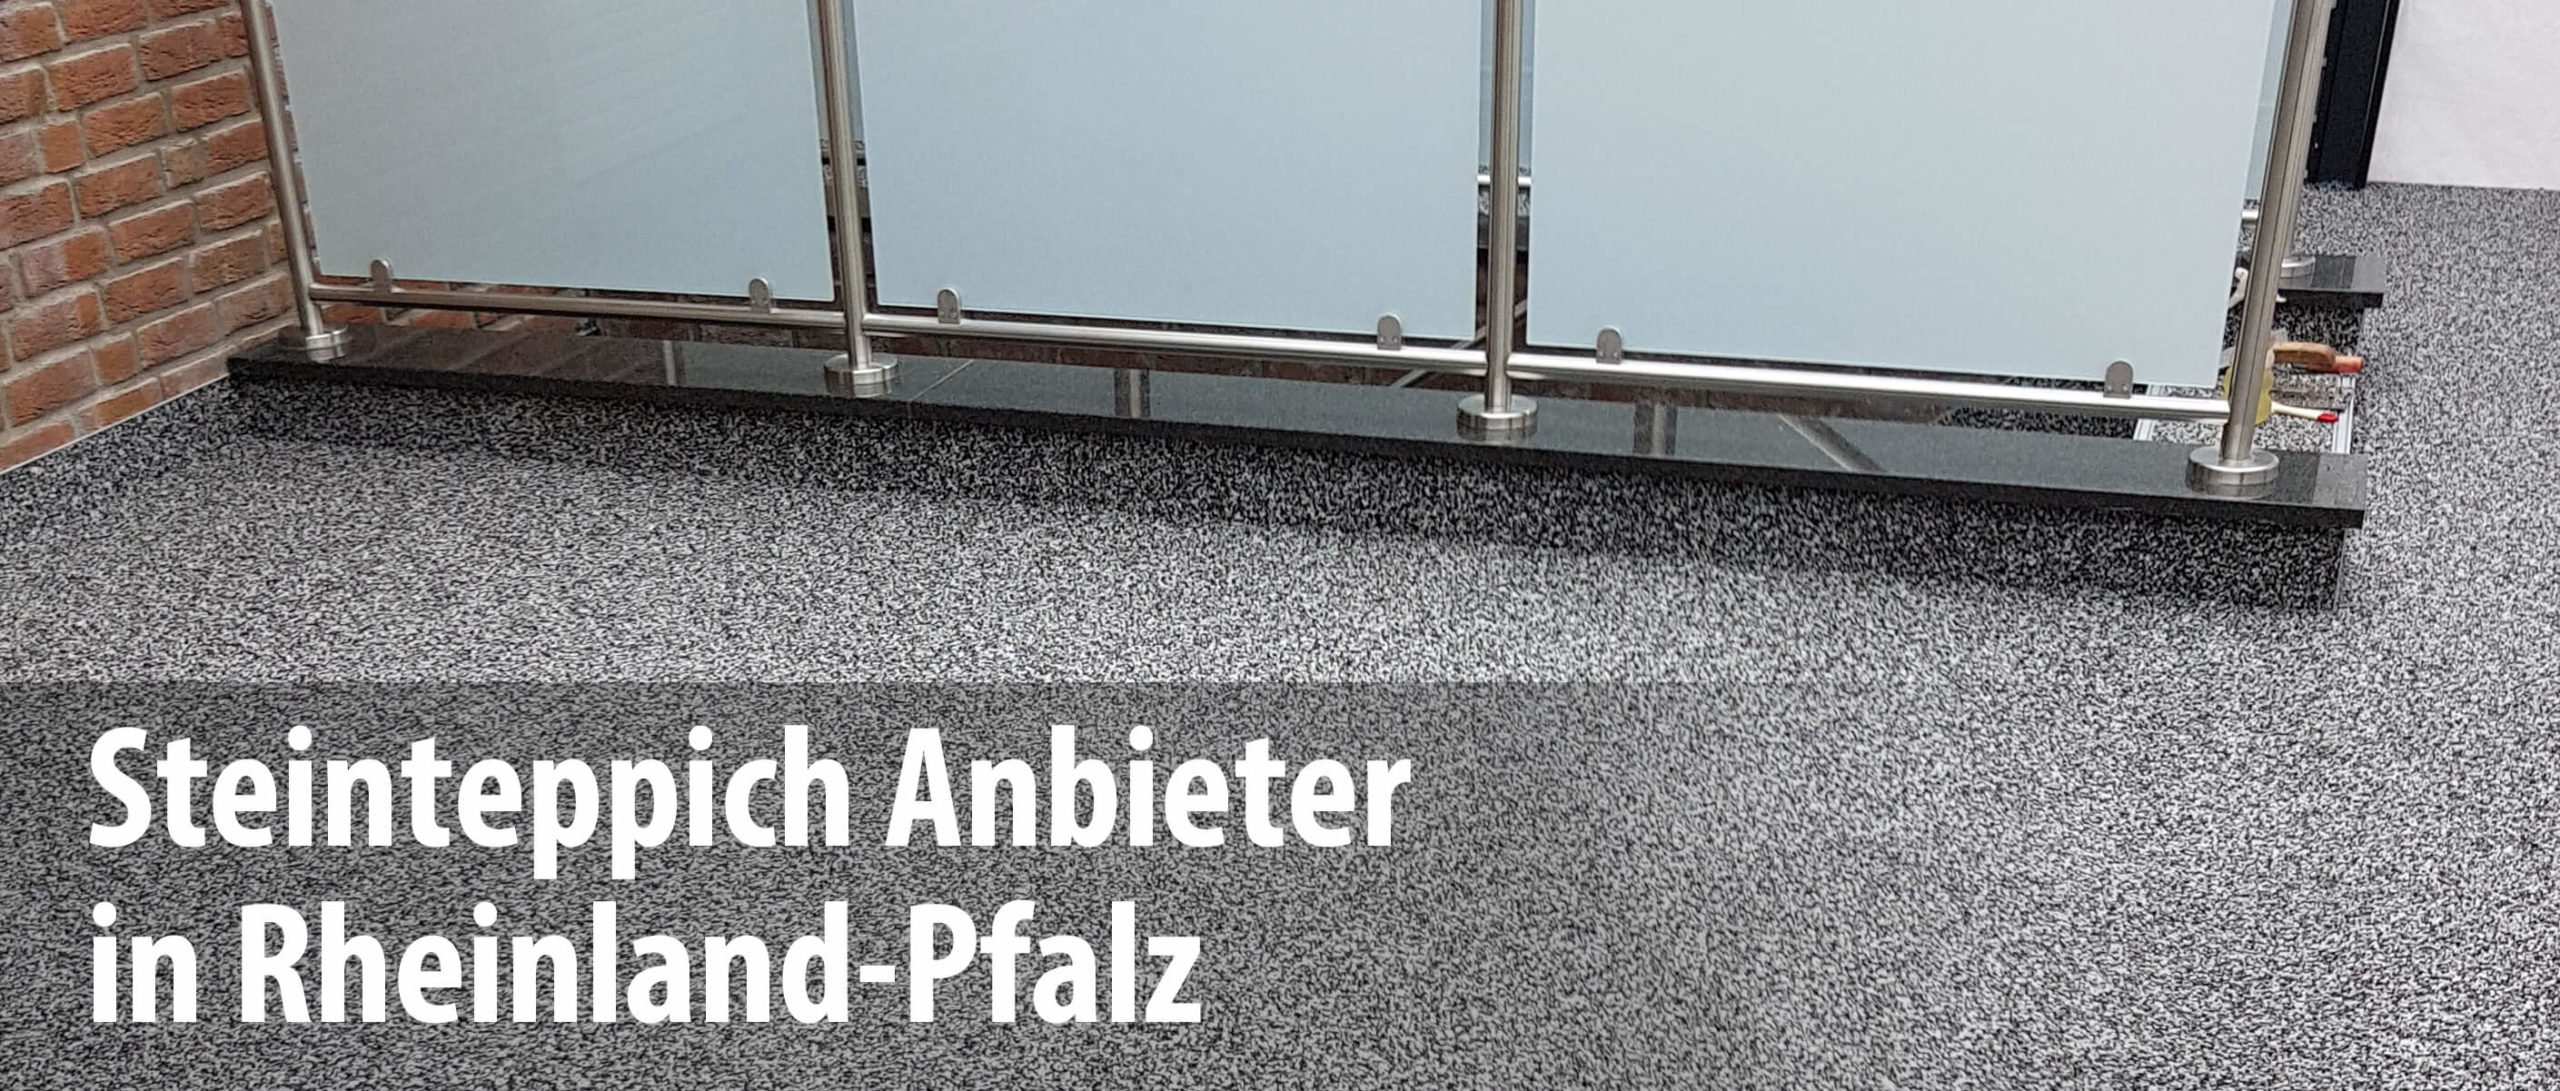 Wir arbeiten mit Steinteppich-Anbietern in Rheinland-Pfalz zusammen und bieten mit unseren Partnern die professionelle Sanierung und Abdichtung von Balkonen und Terrassen.